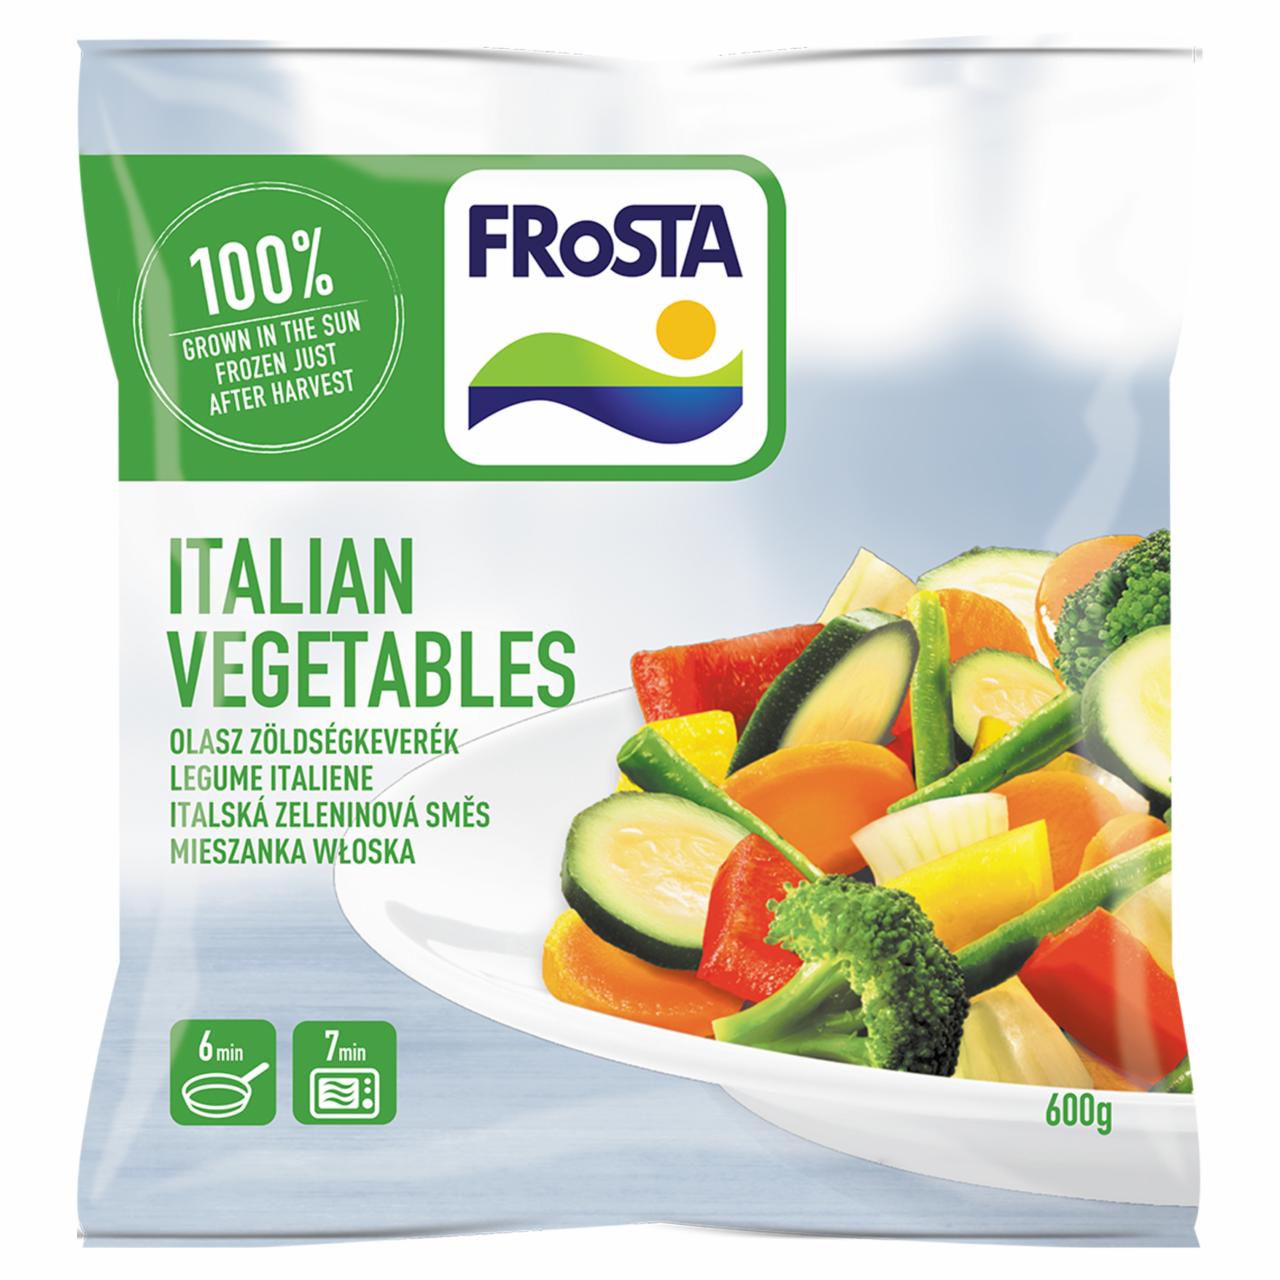 Képek - FRoSTA gyorsfagyasztott olasz zöldségkeverék 600 g